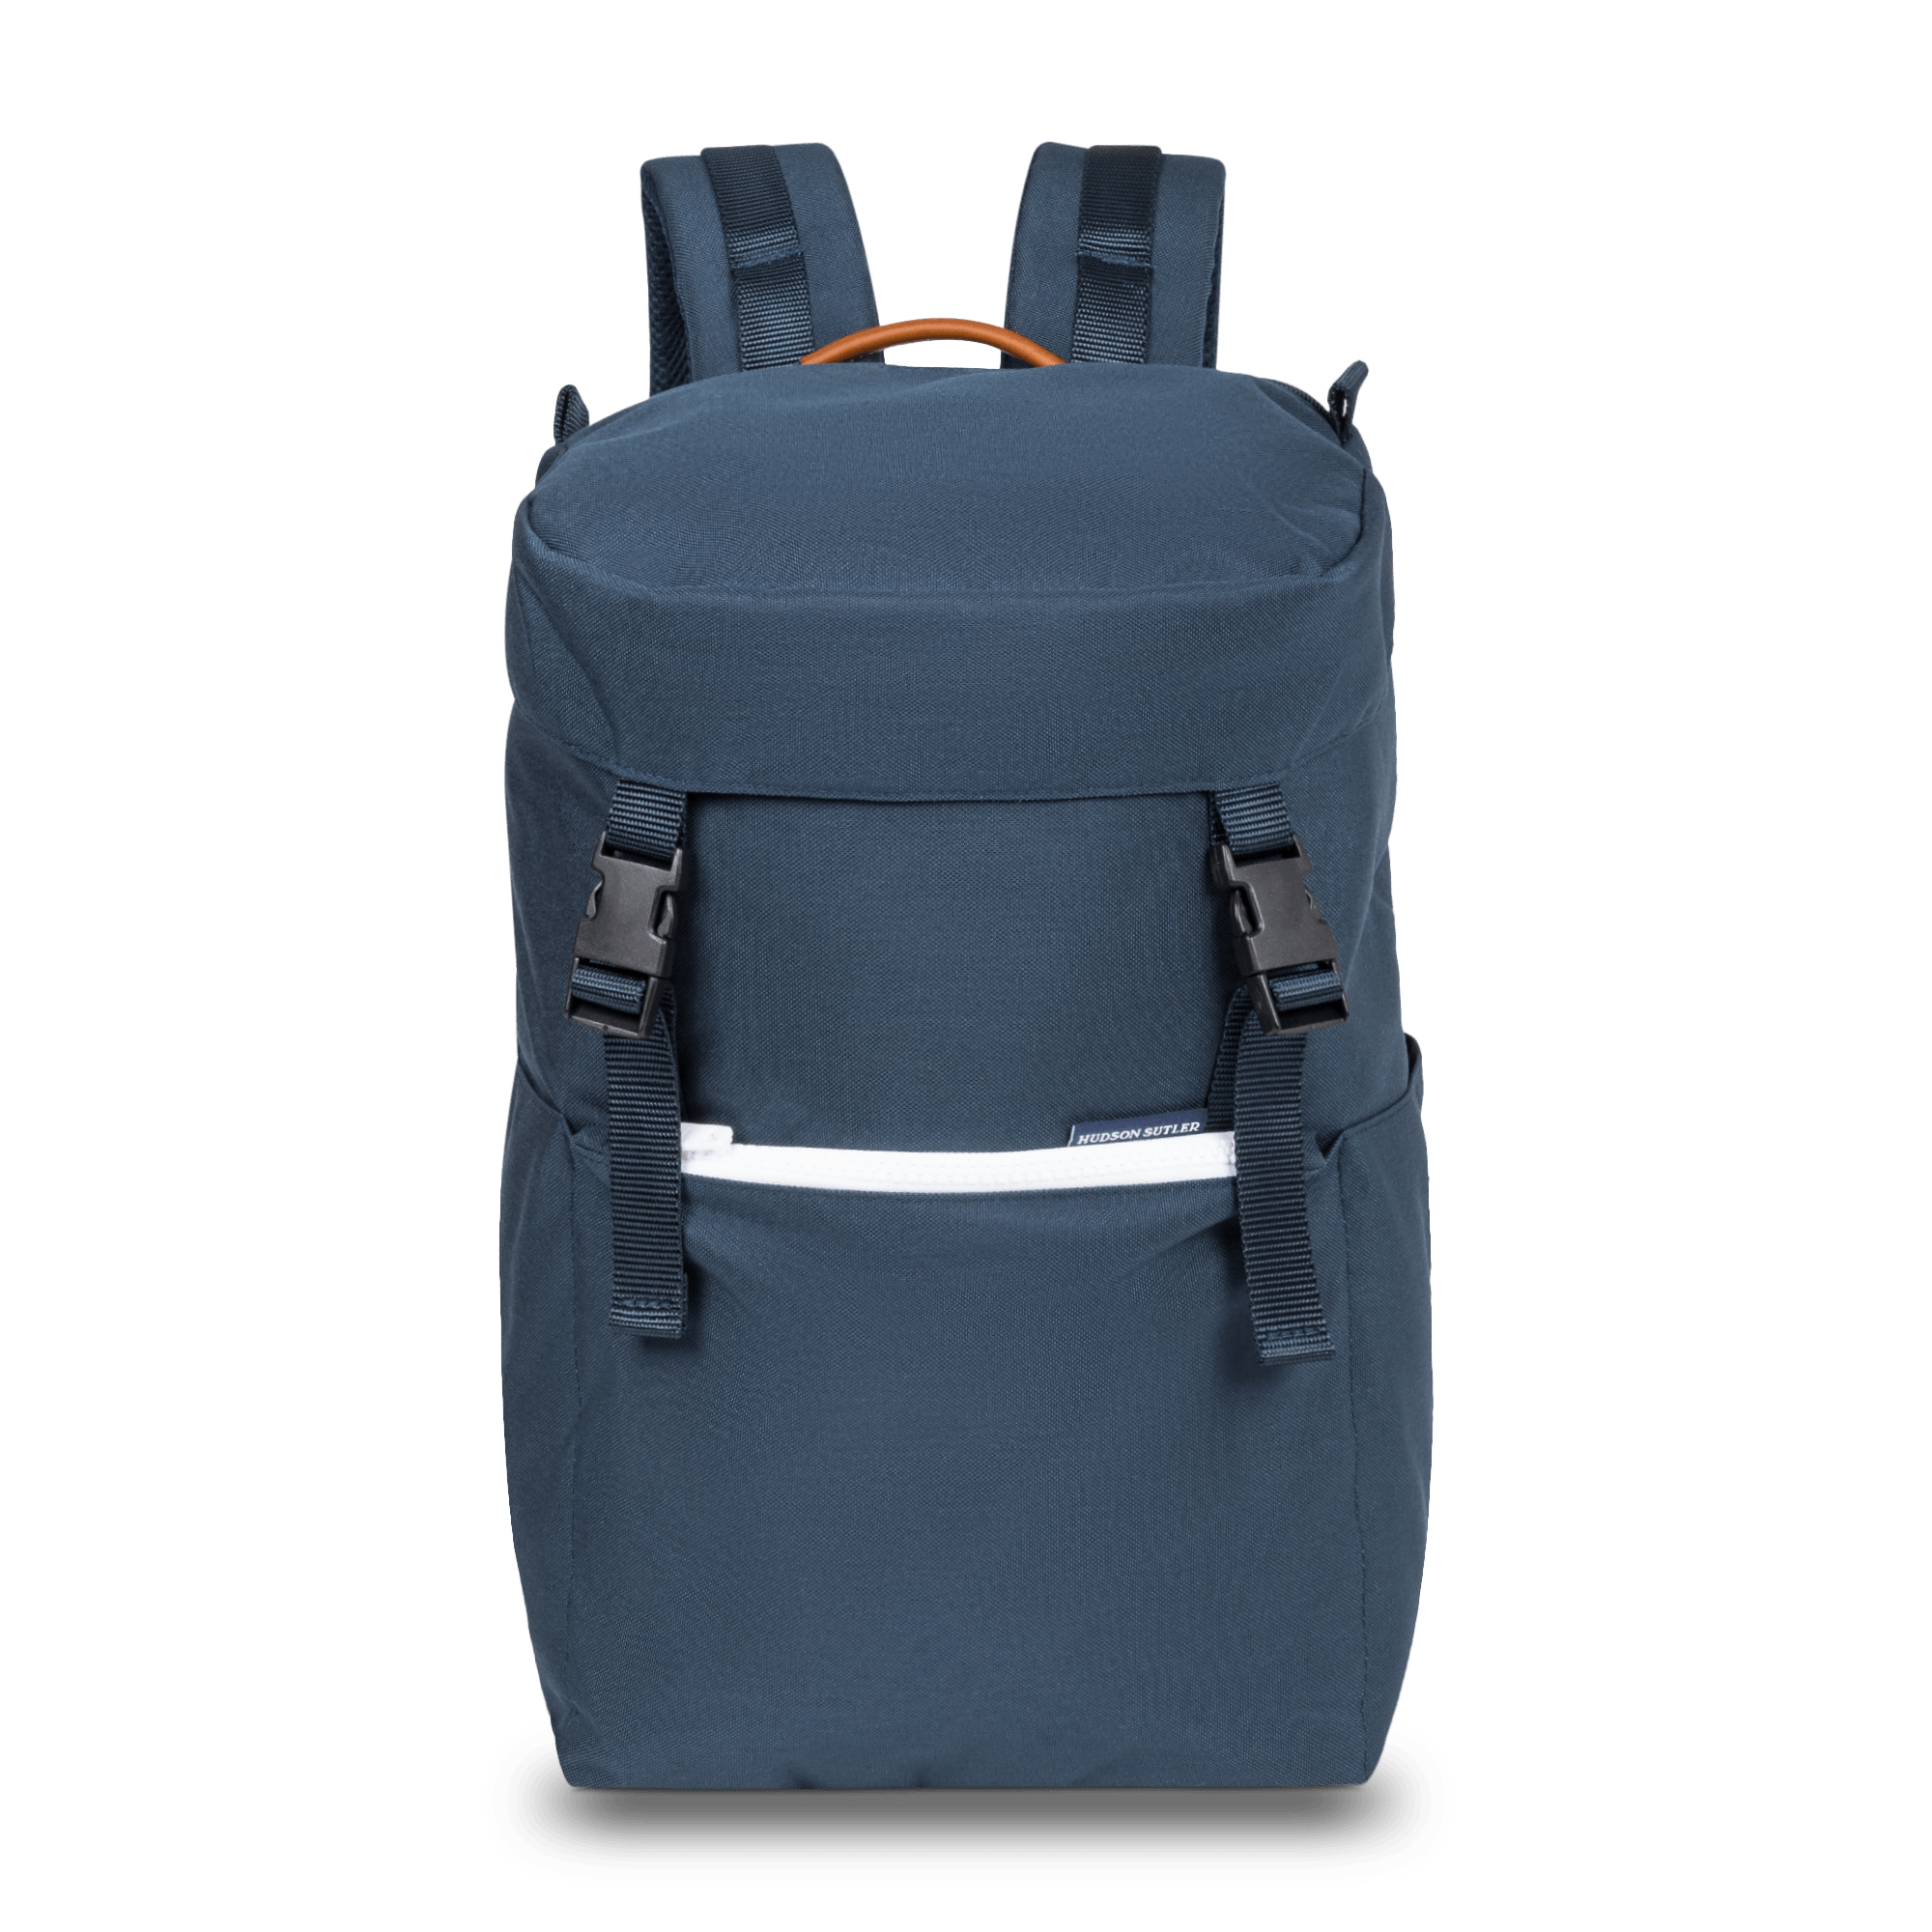 Hudson Sutler Nylon Cooler Backpack- Navy